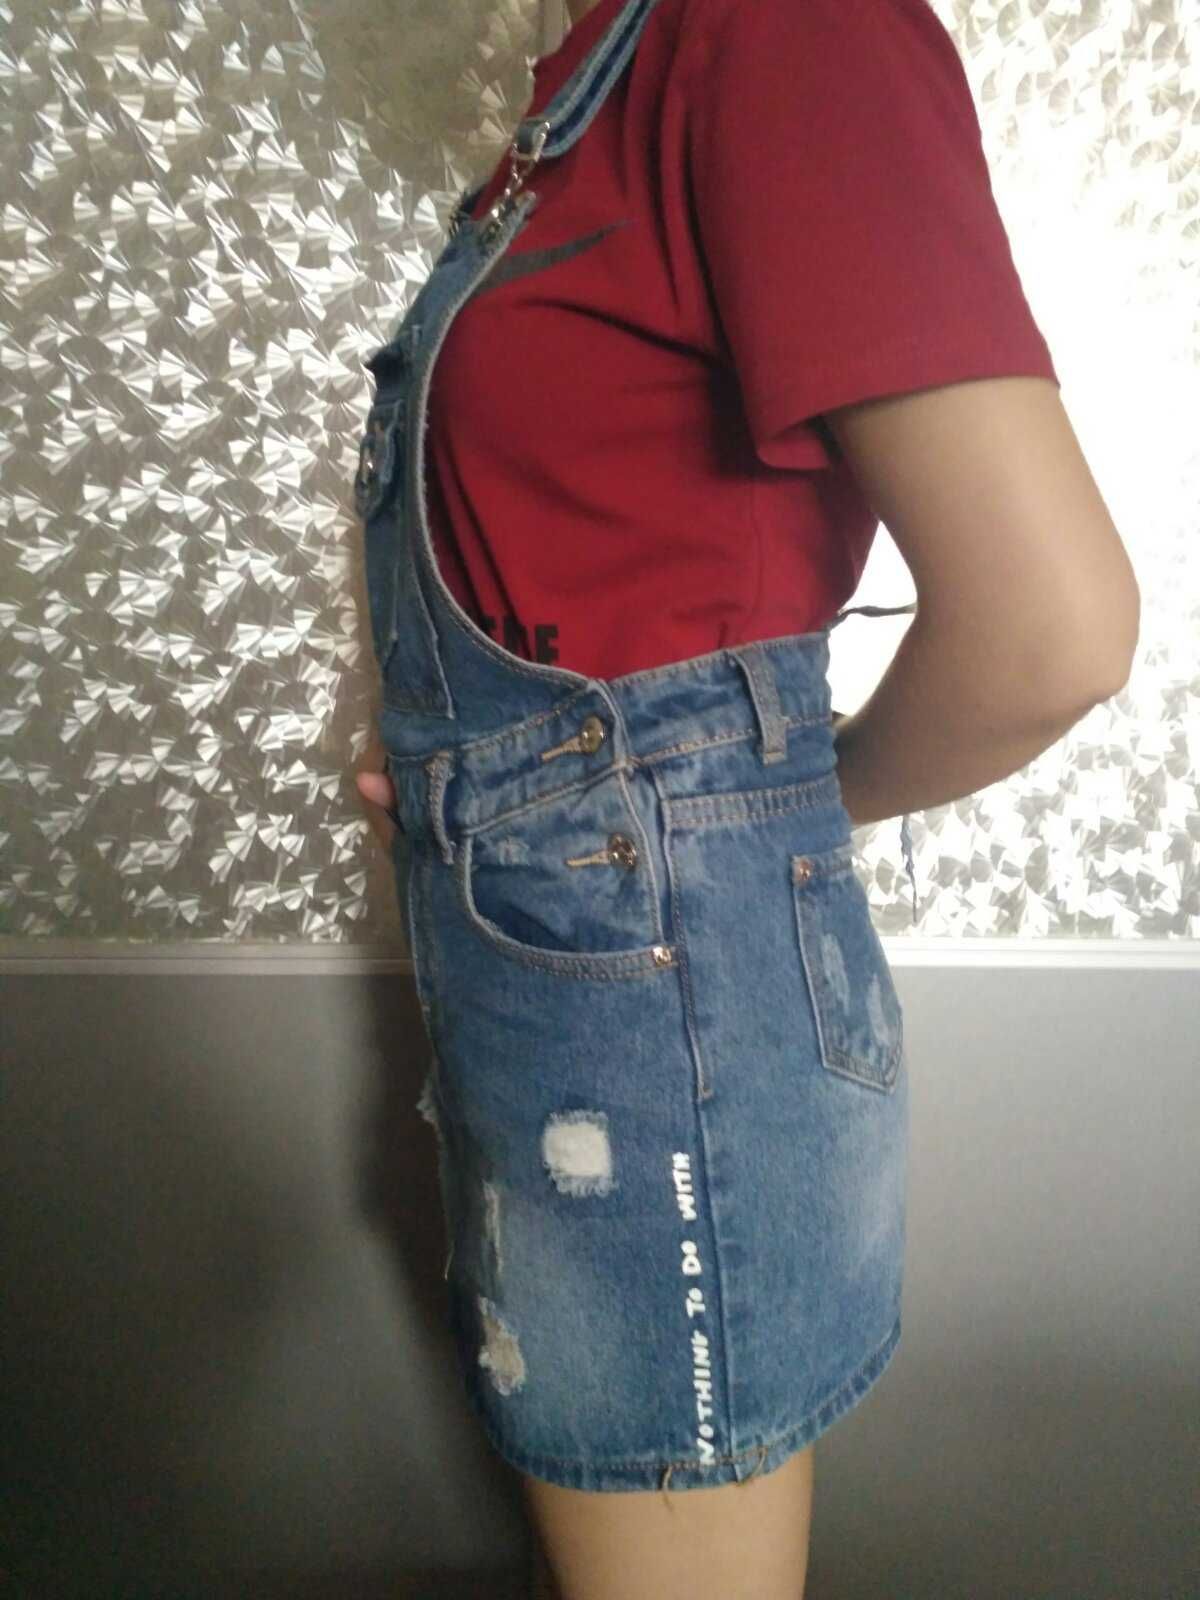 Джинсовый комбинезон с юбкой, юбка джинсовая, XS-S 40-42 размер,Турция